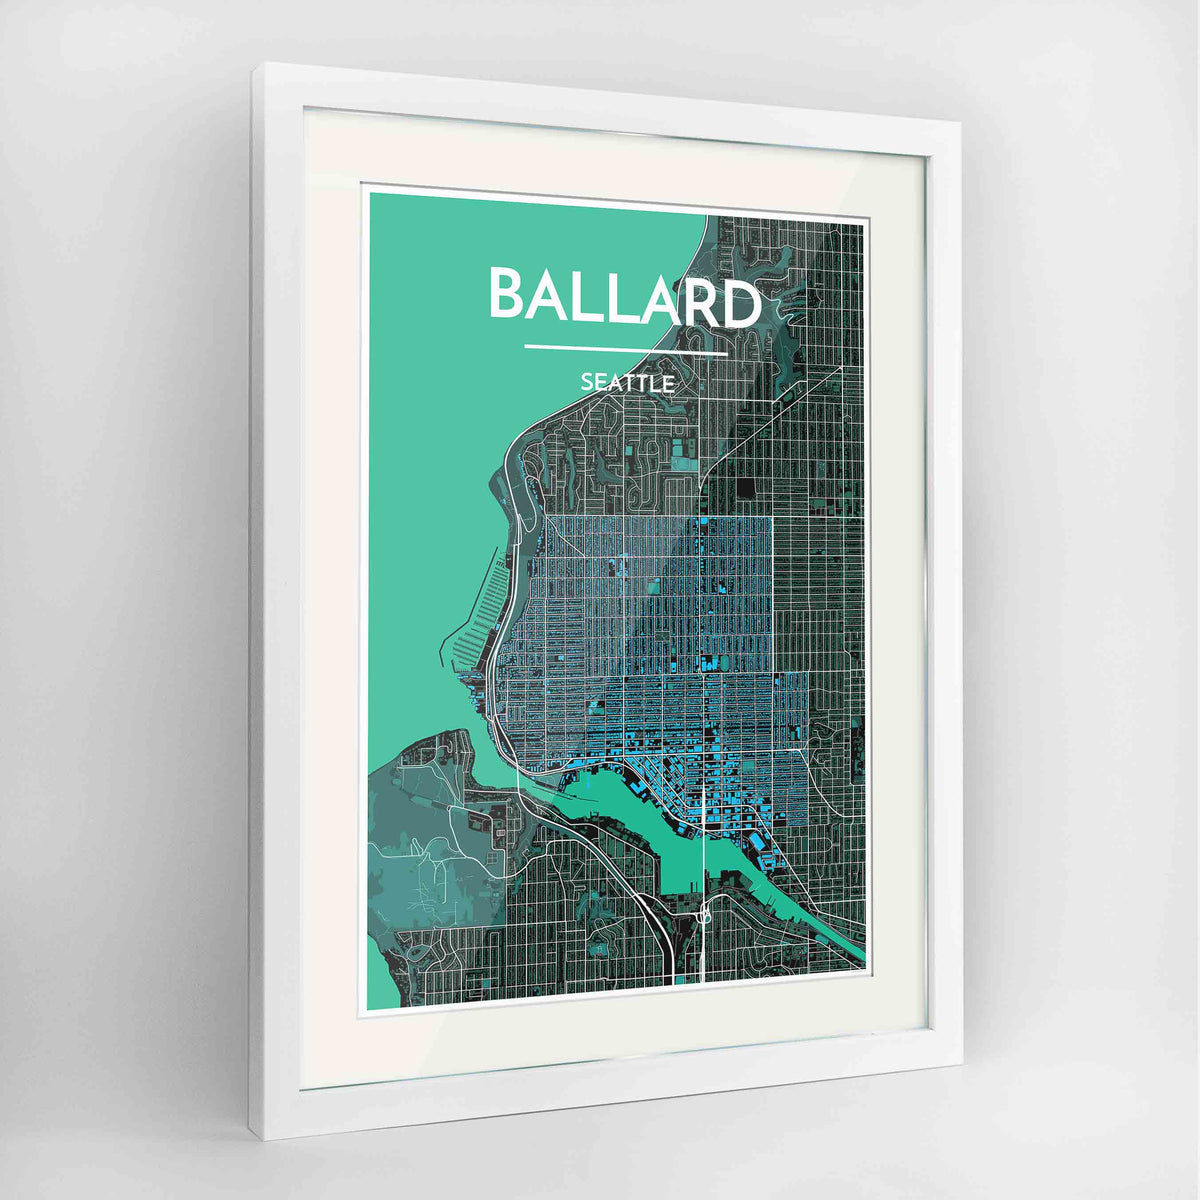 Framed Seattle Ballard Neighbourhood Map Art Print 24x36&quot; Contemporary White frame Point Two Design Group